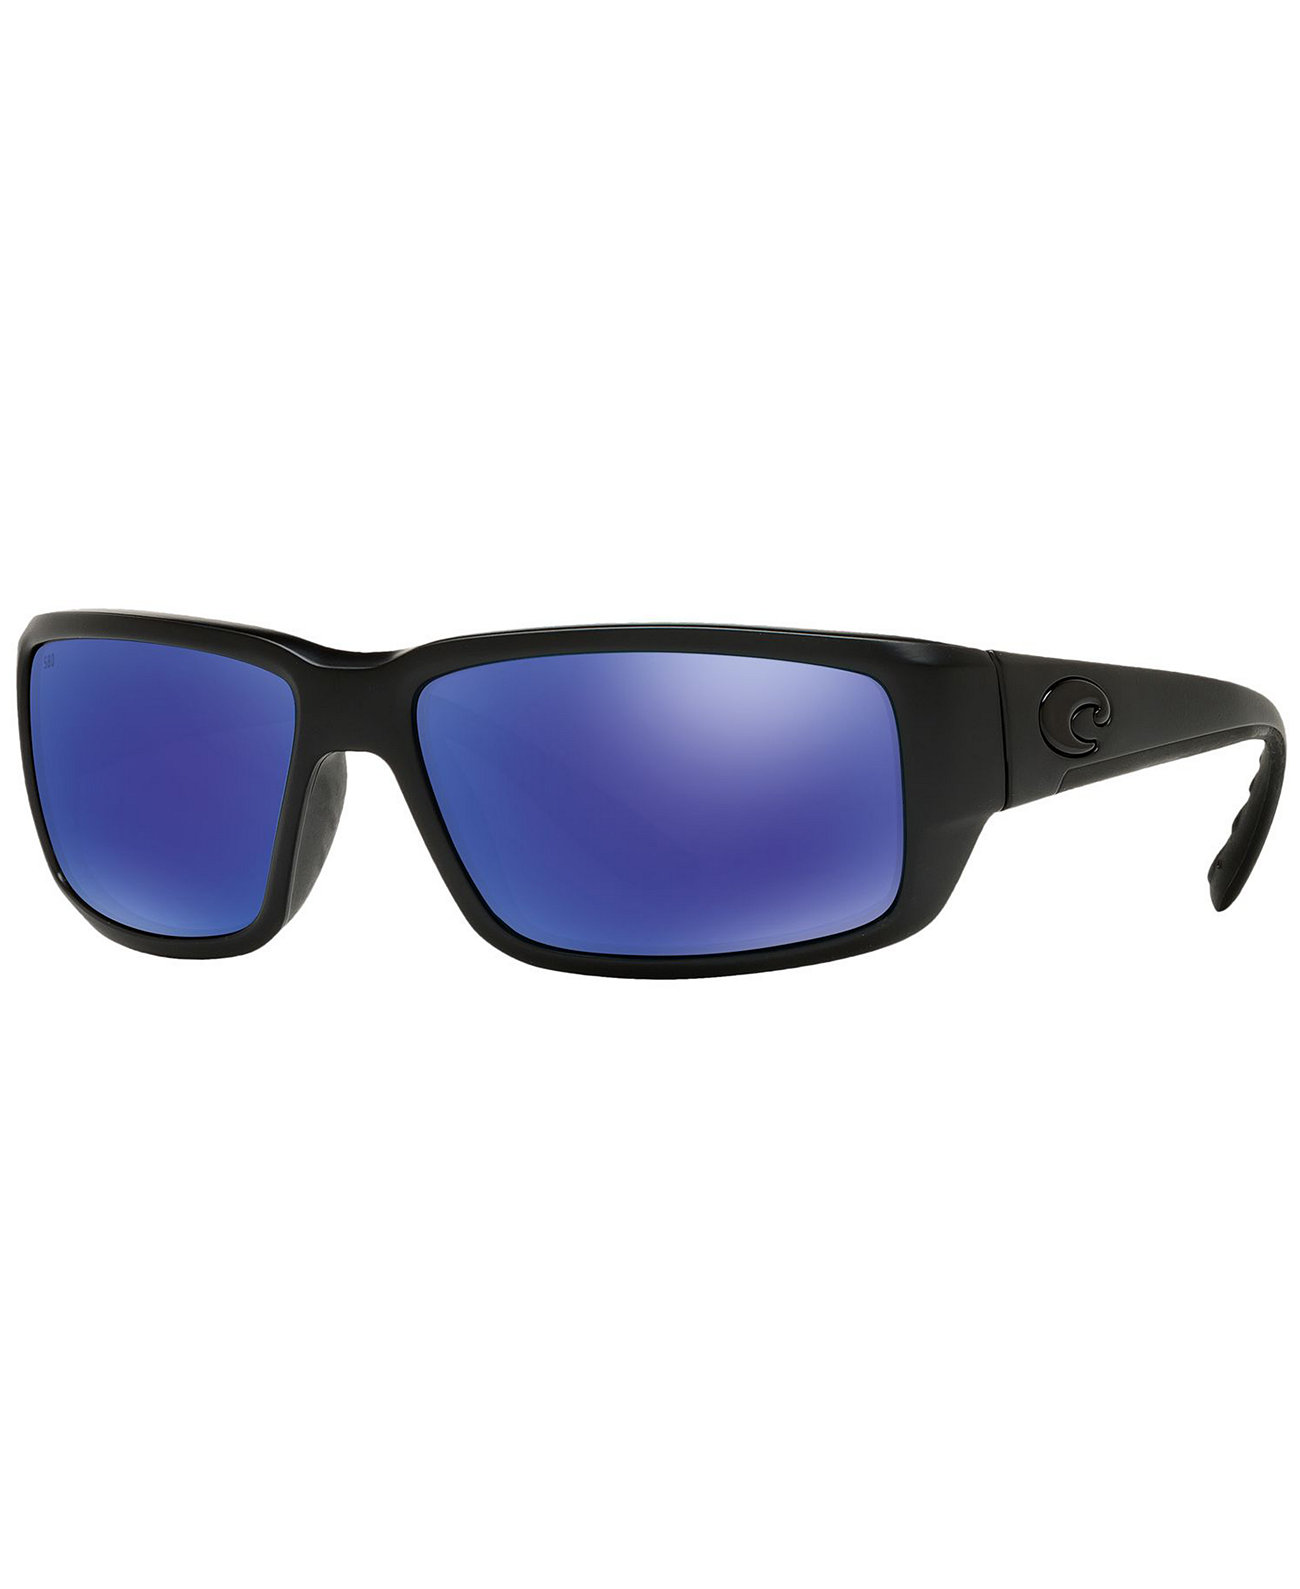 Поляризованные солнцезащитные очки, FANTAIL POLARIZED 59 COSTA DEL MAR